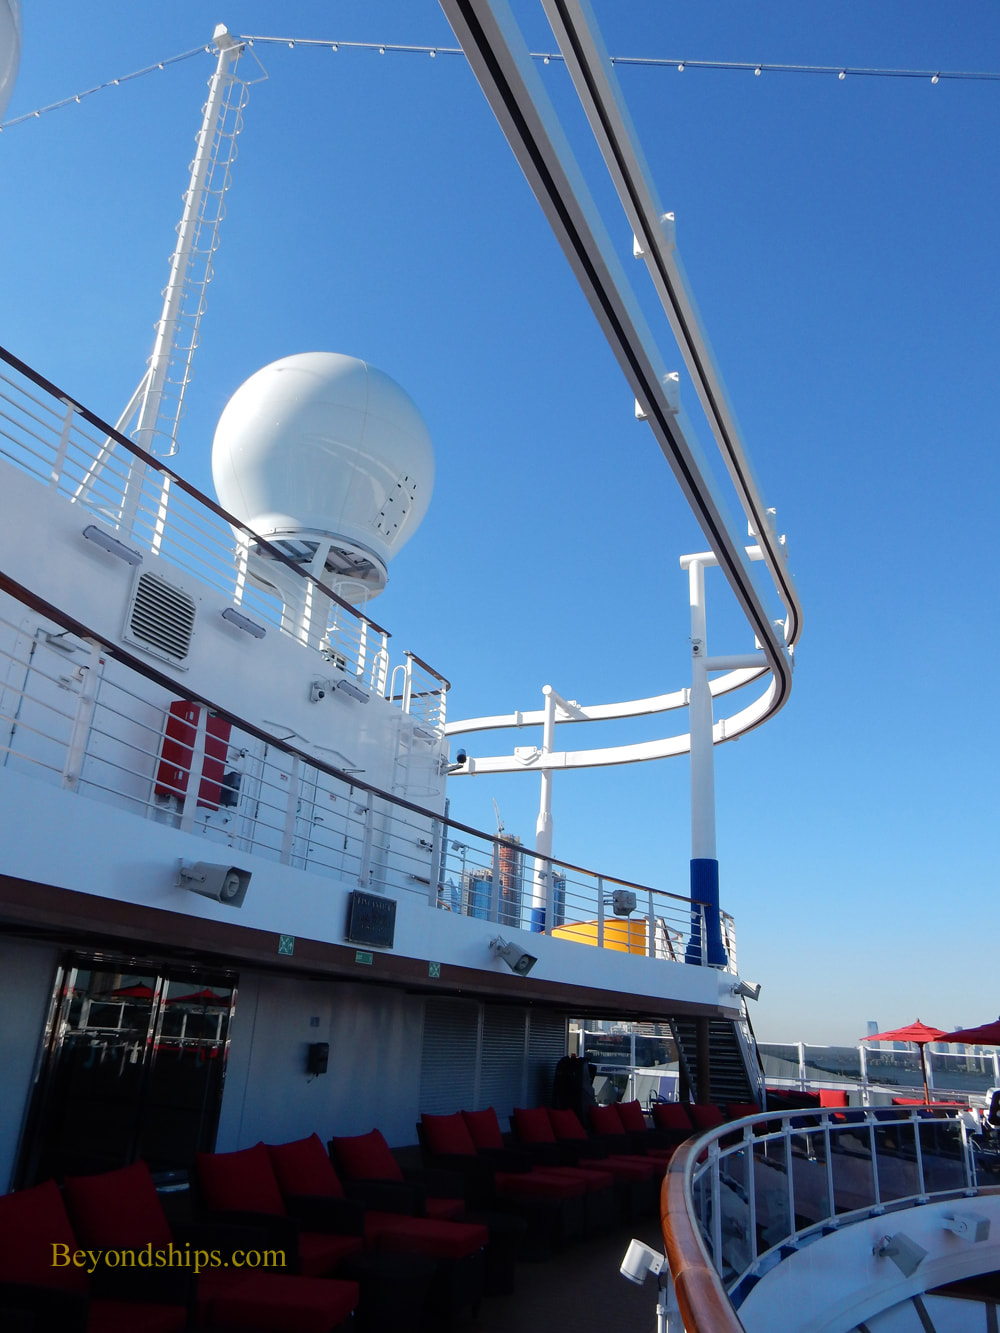 Skyrider,Carnival Horizon, cruise ship